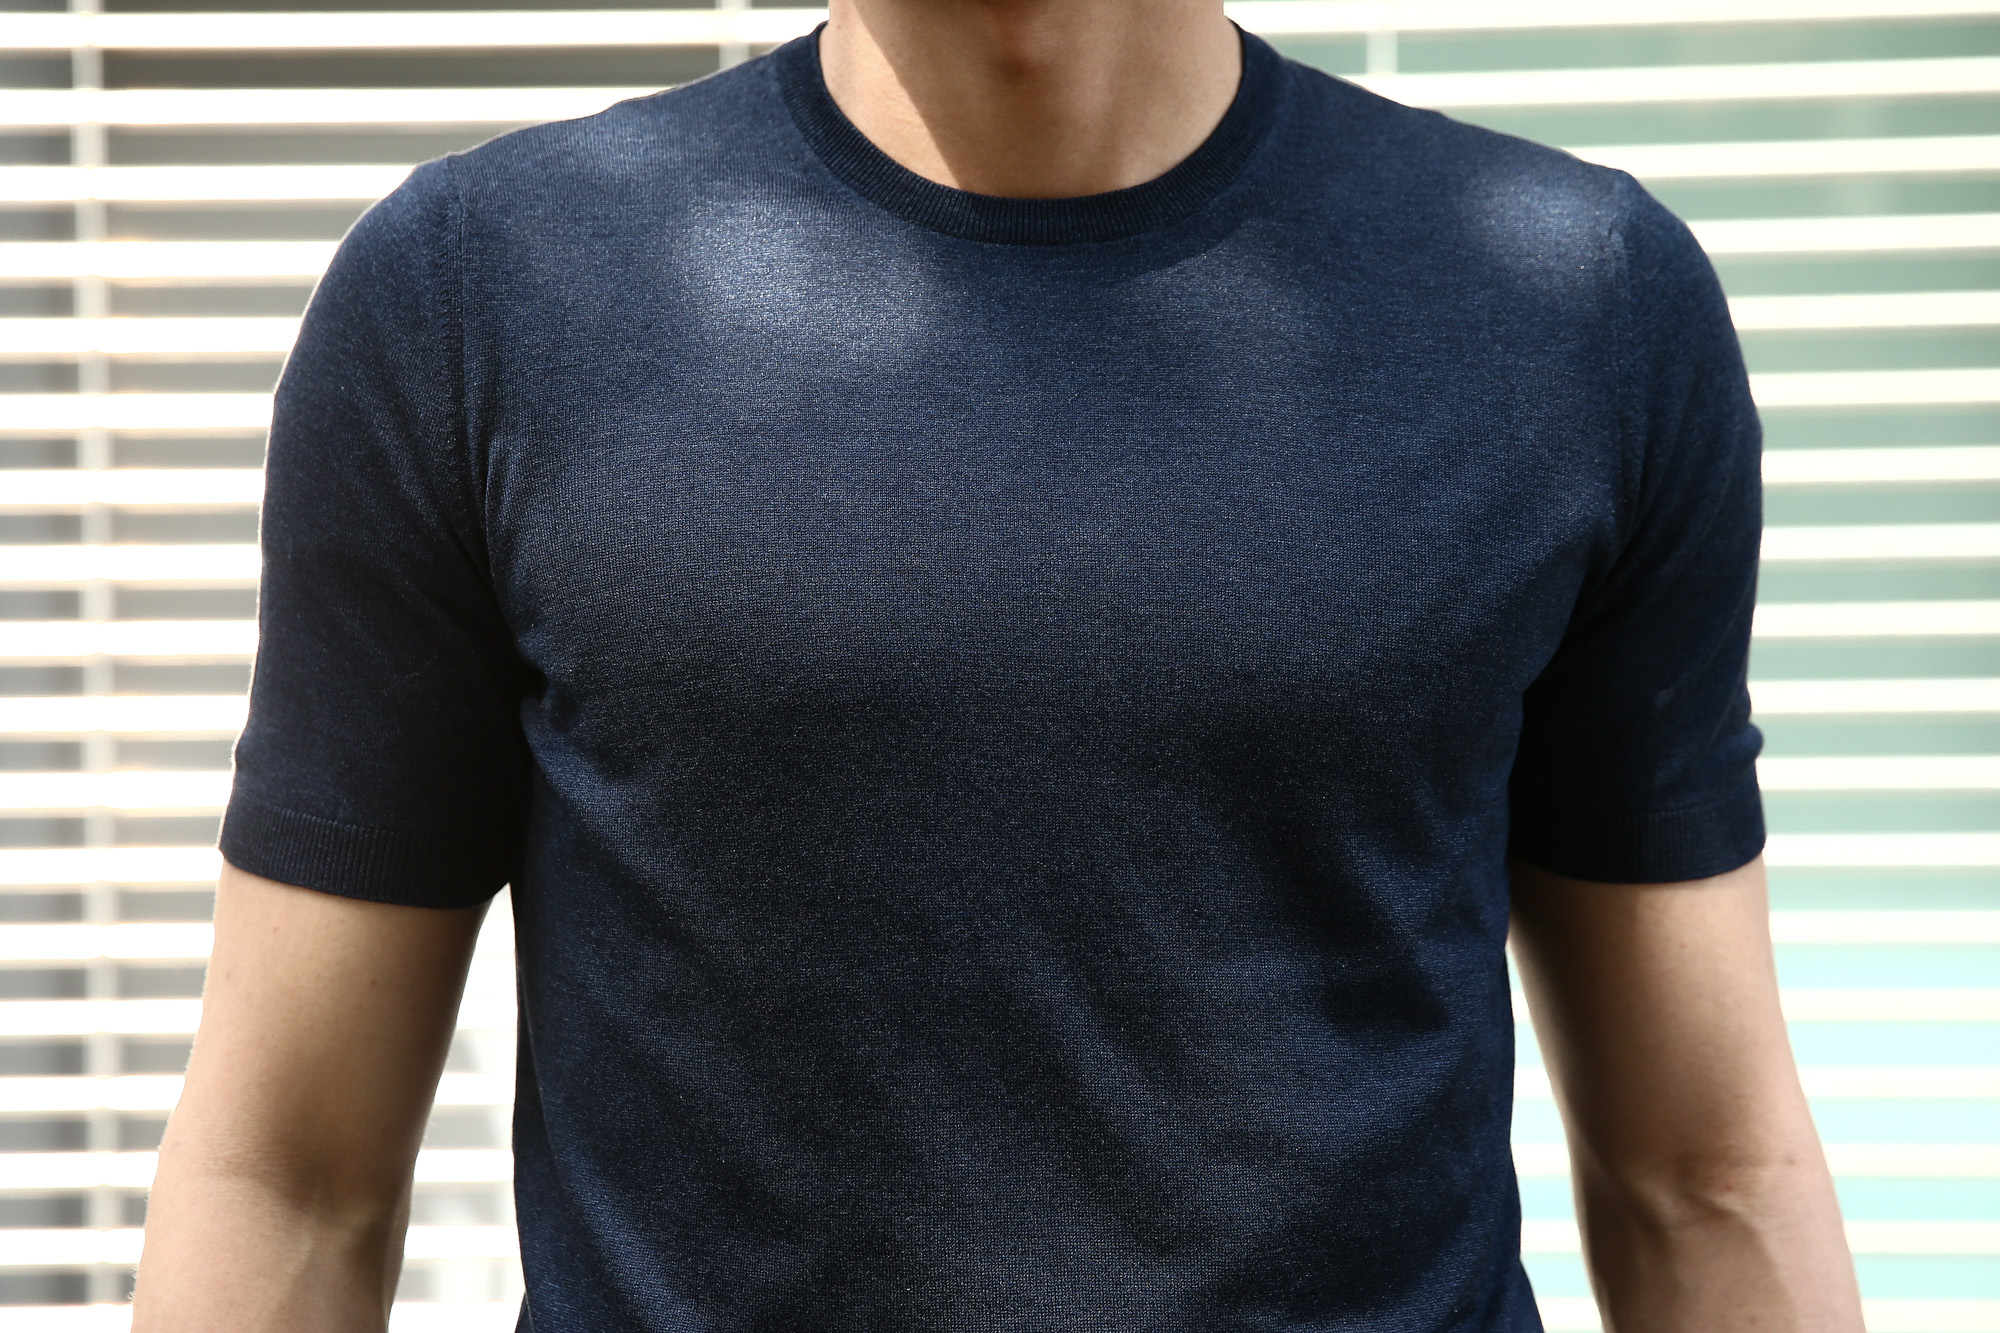 Gran Sasso (グランサッソ) Silk Knit T-shirt (シルクニット Tシャツ) SETA (シルク 100%